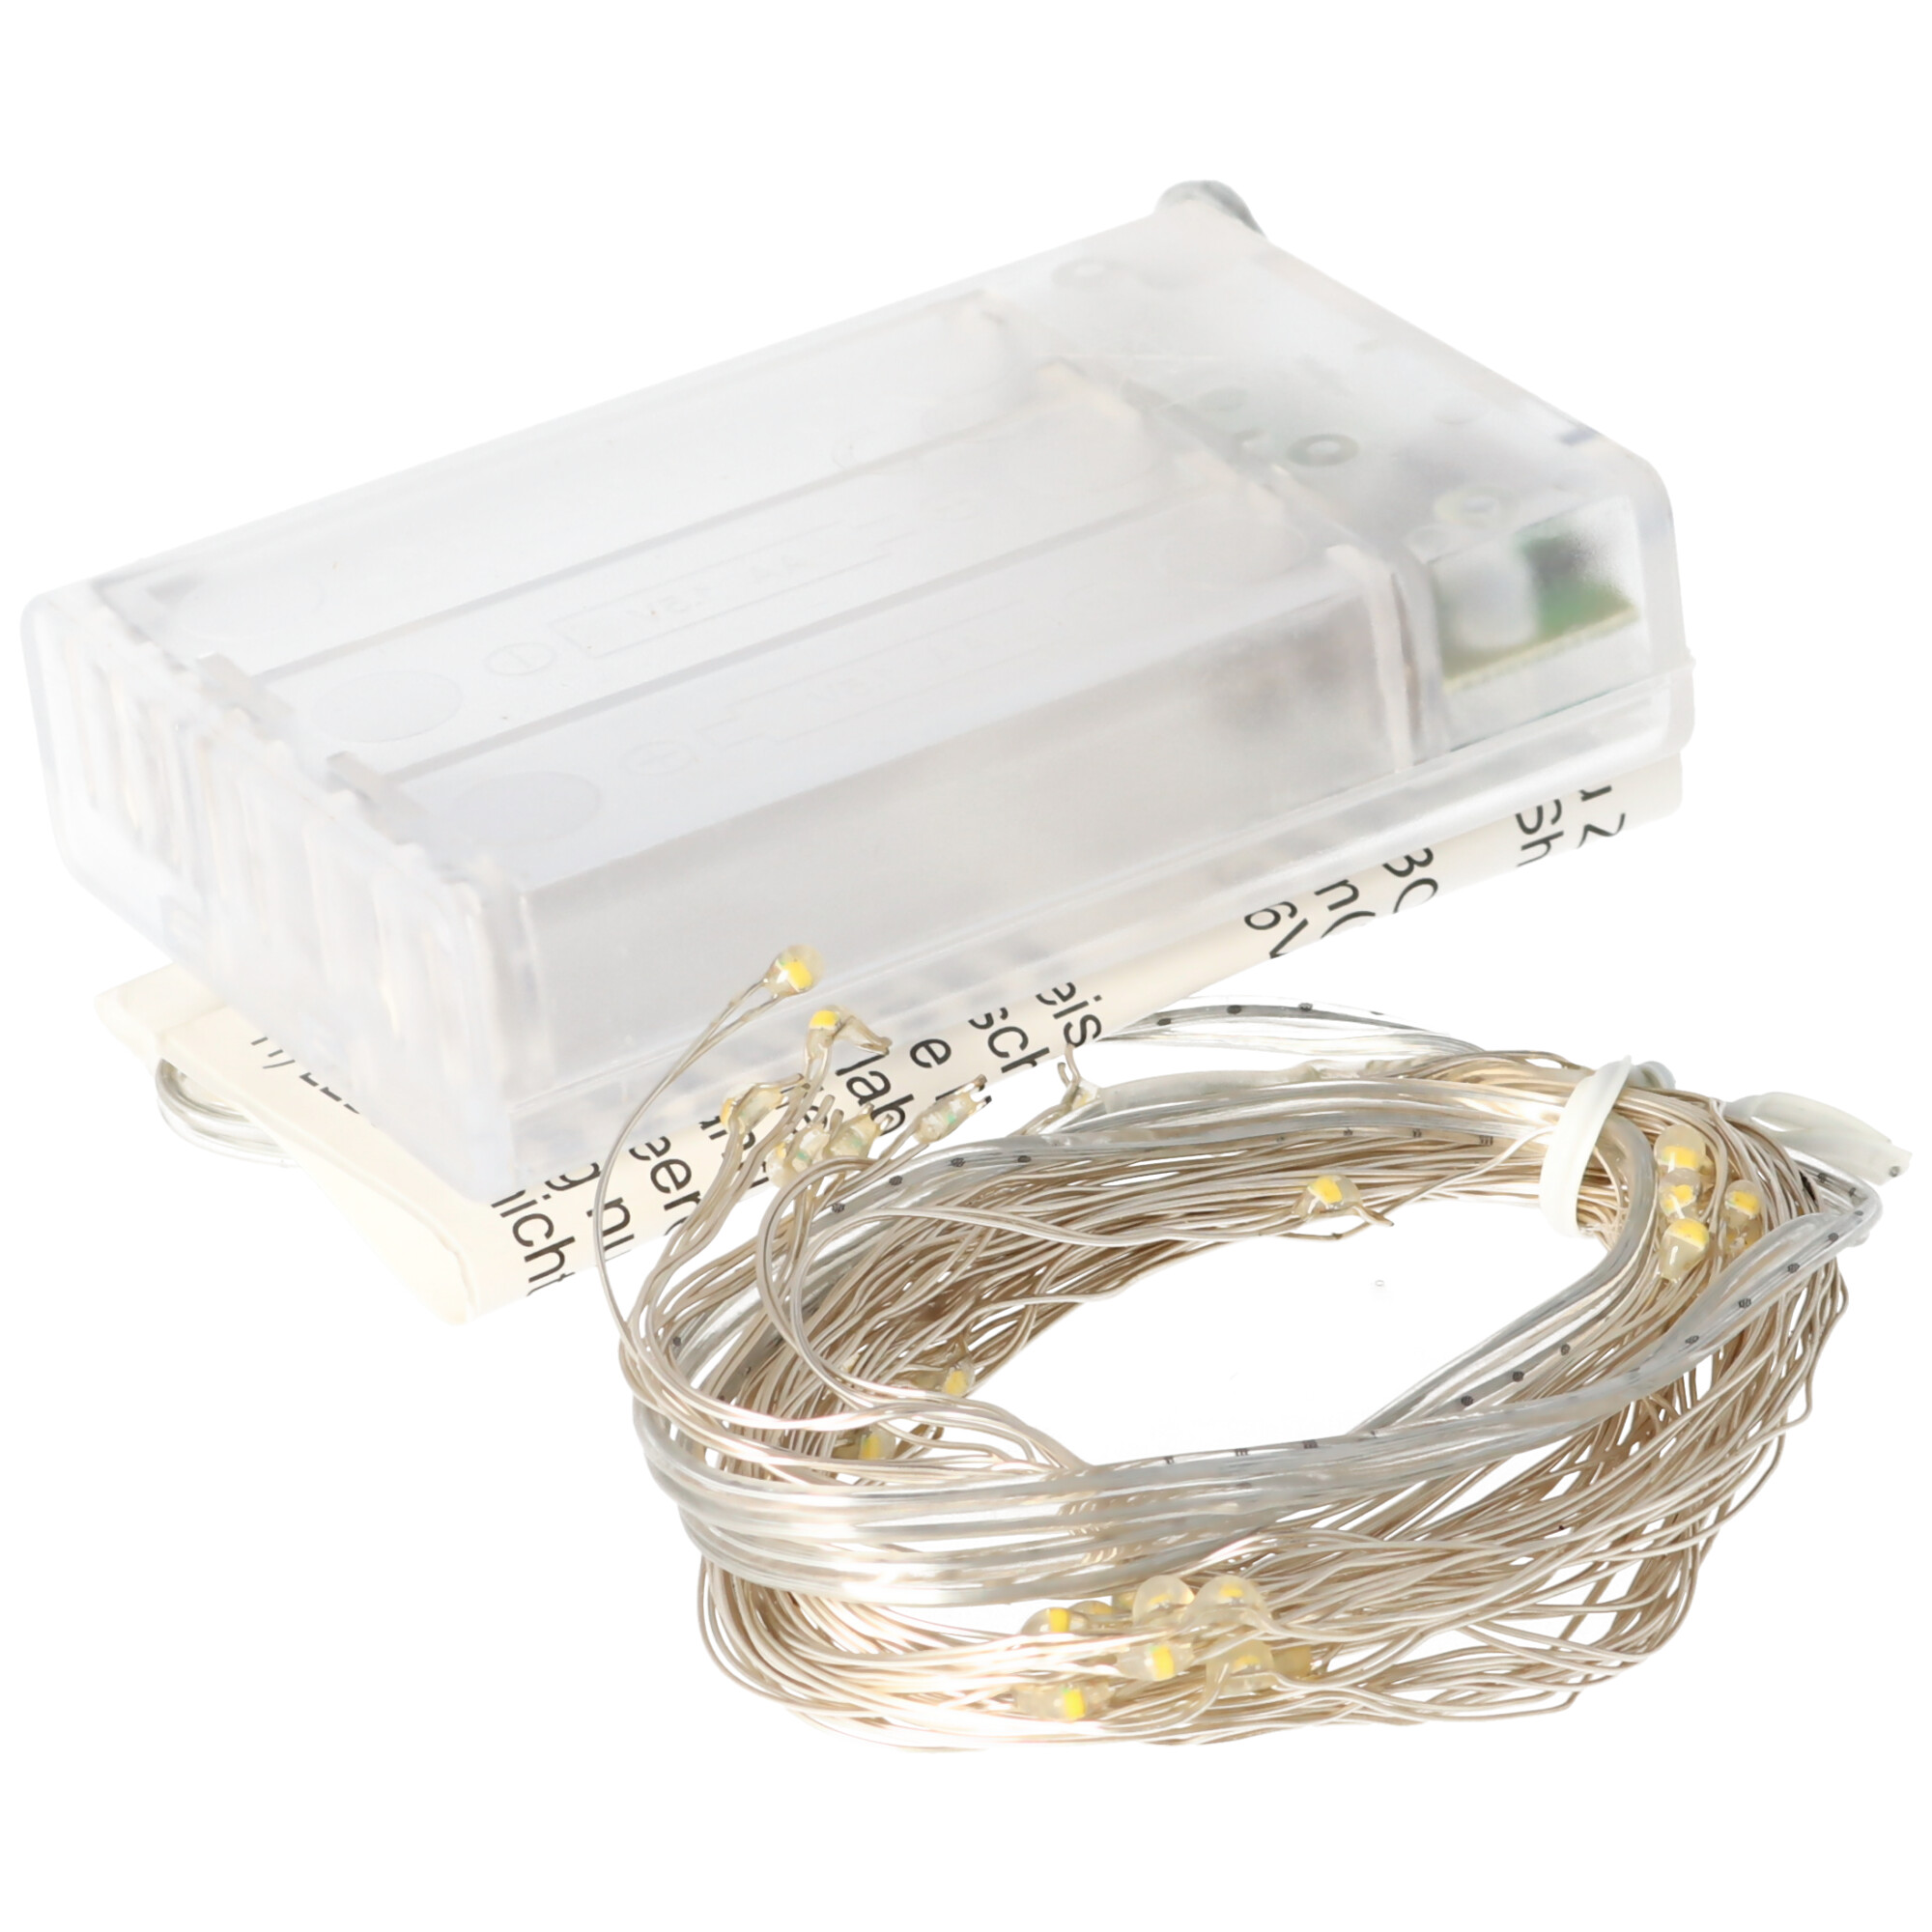 EGB LED-Micro-Bündel-Lichterkette 48 ww LED innen